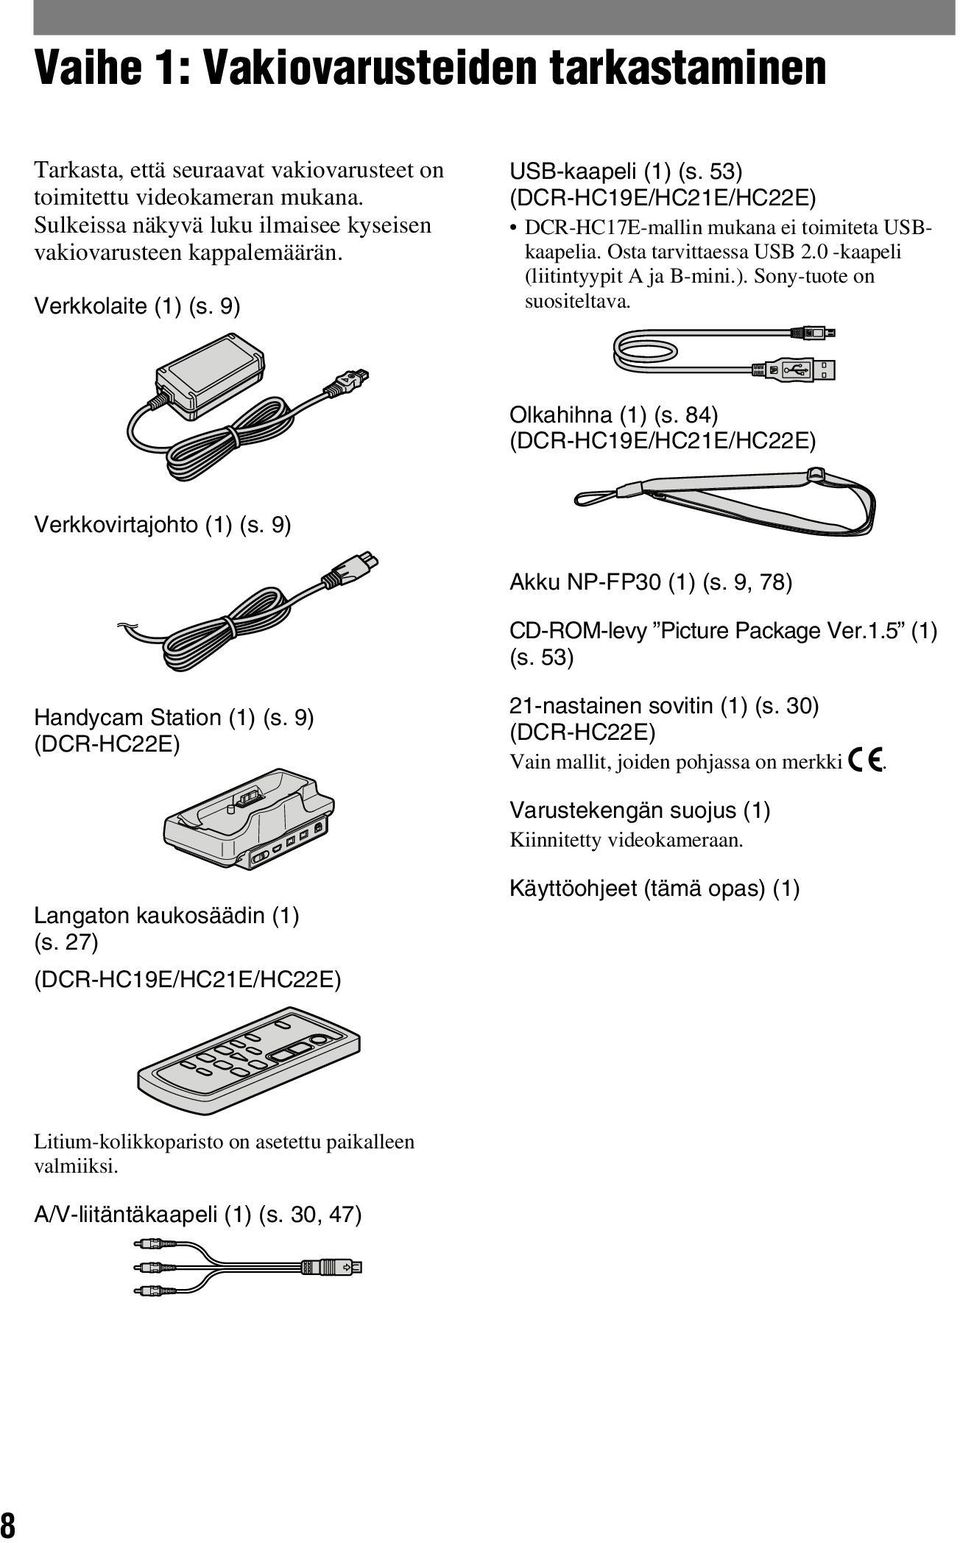 Olkahihna (1) (s. 84) (DCR-HC19E/HC21E/HC22E) Verkkovirtajohto (1) (s. 9) Akku NP-FP30 (1) (s. 9, 78) CD-ROM-levy Picture Package Ver.1.5 (1) (s. 53) Handycam Station (1) (s.